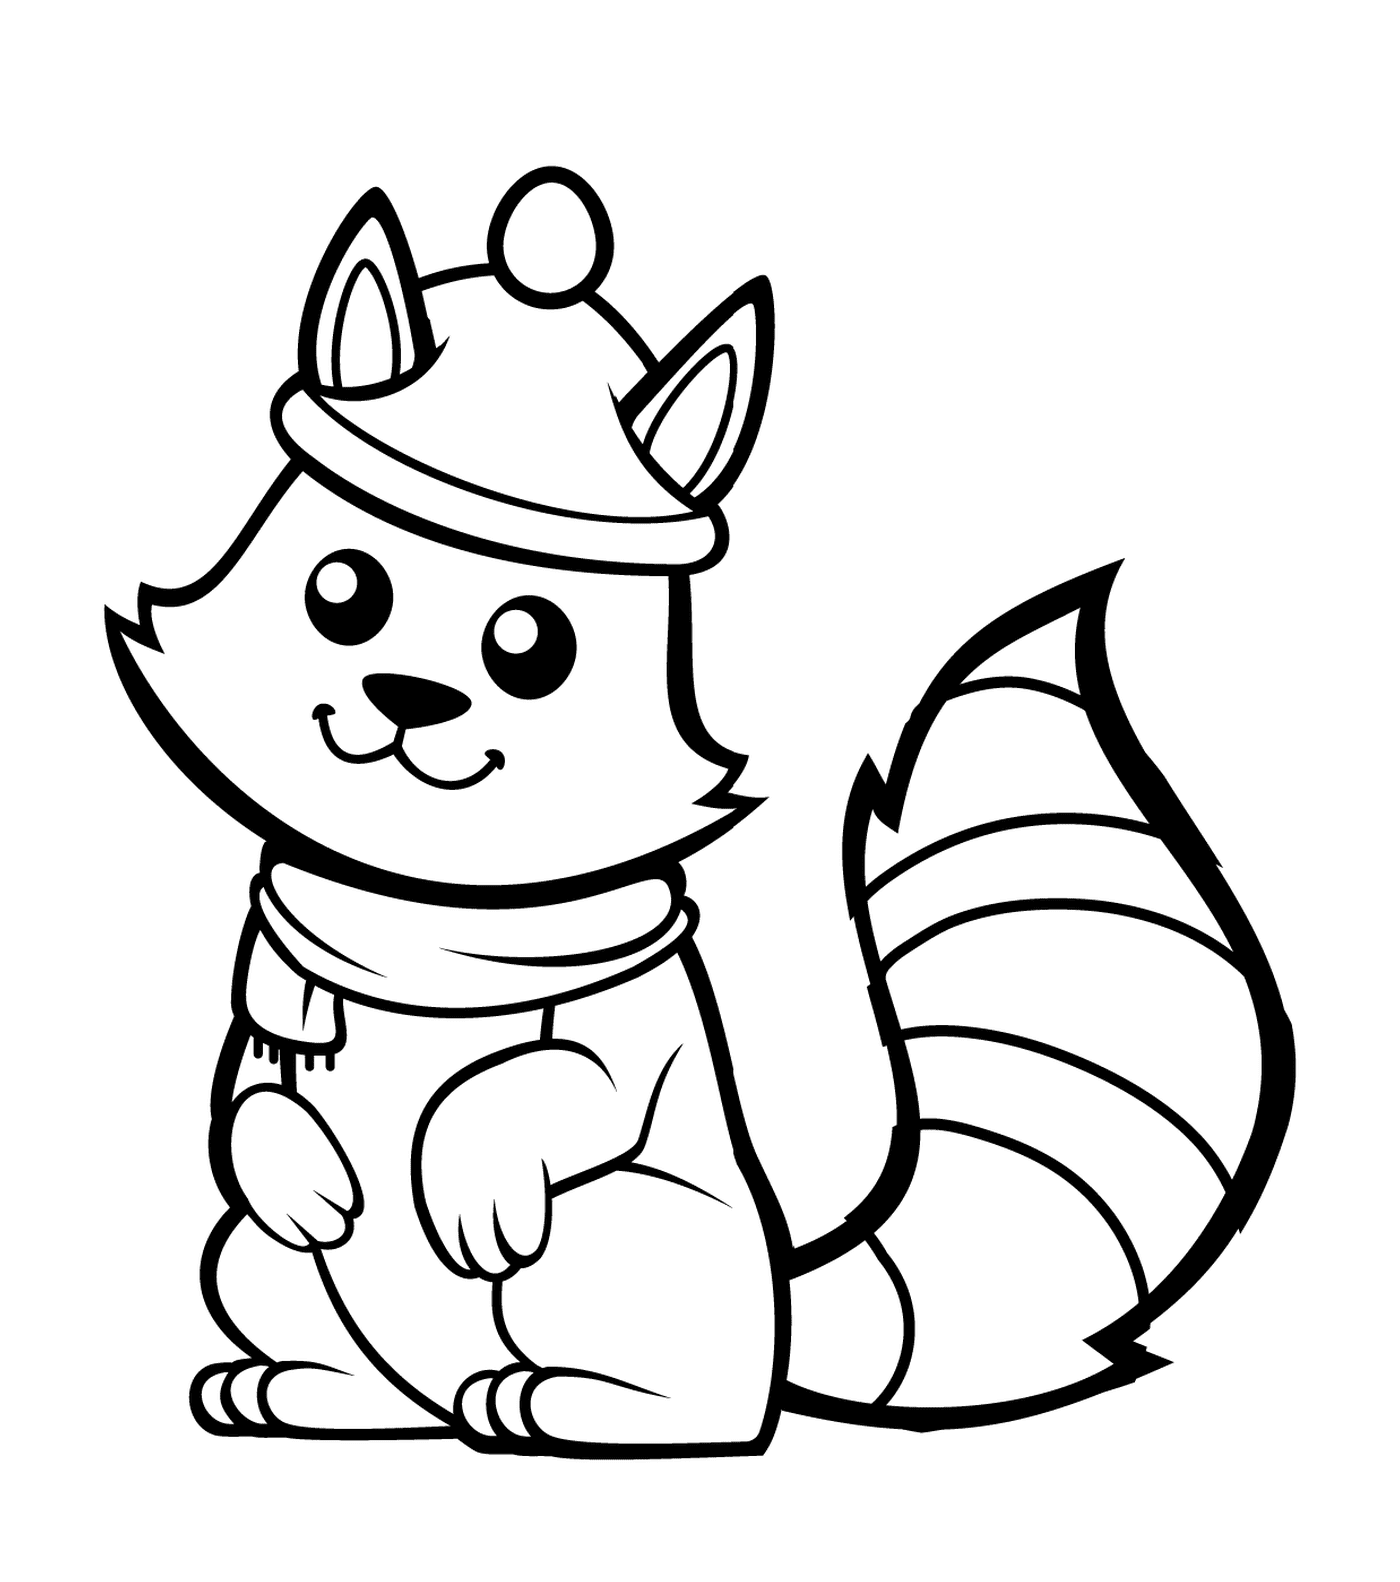  Ein Eichhörnchen mit einem schönen Hut und einem Schal 